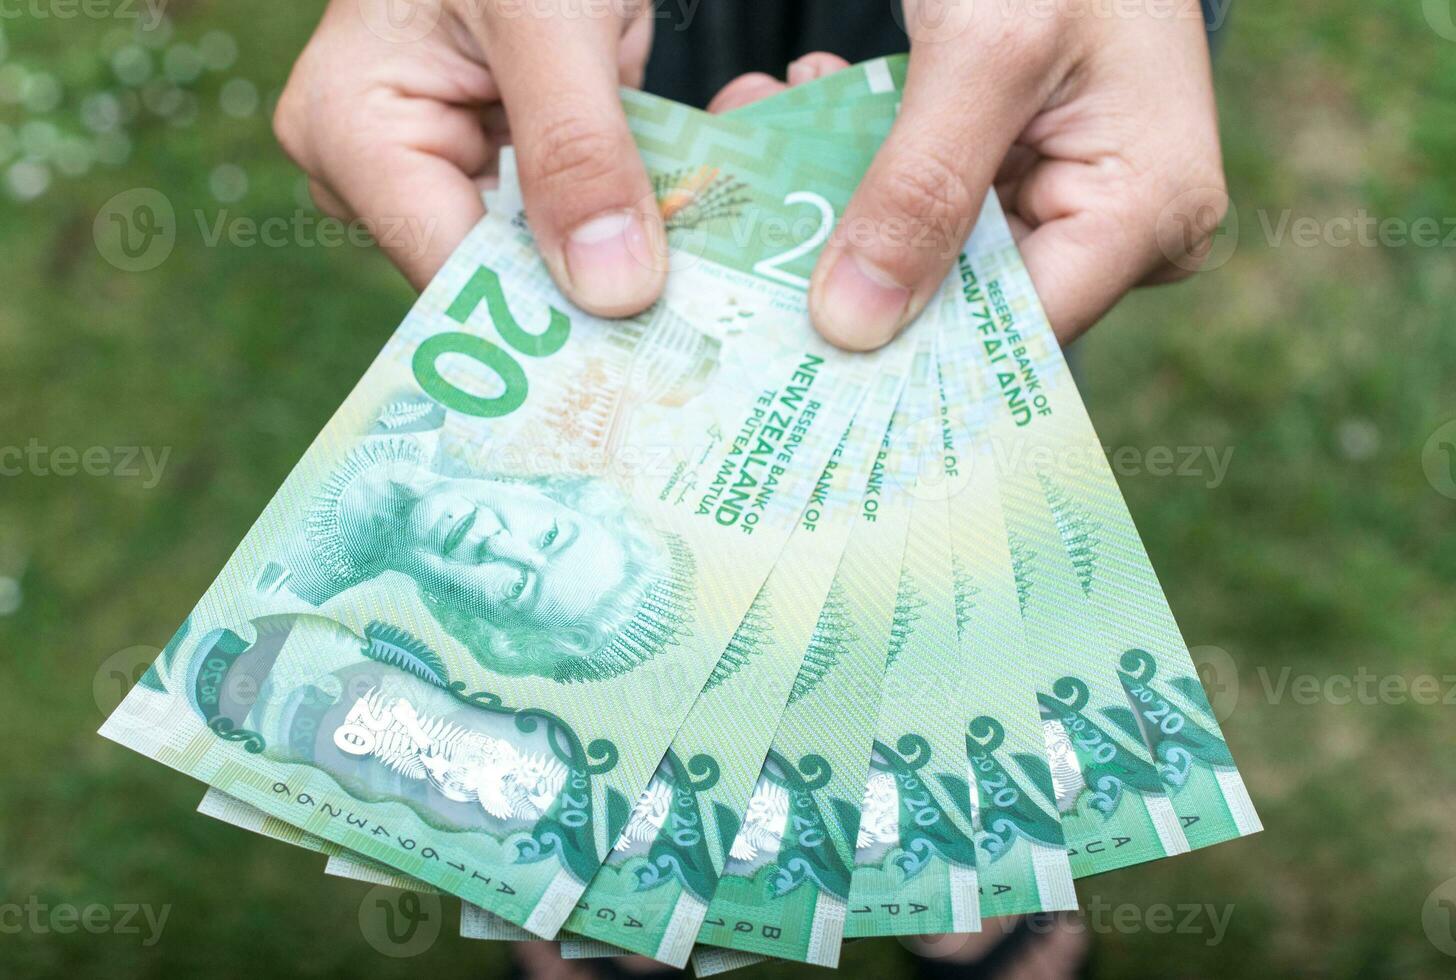 beskurna skott se av någon som visar de pengar ny zealand 20 dollar. foto